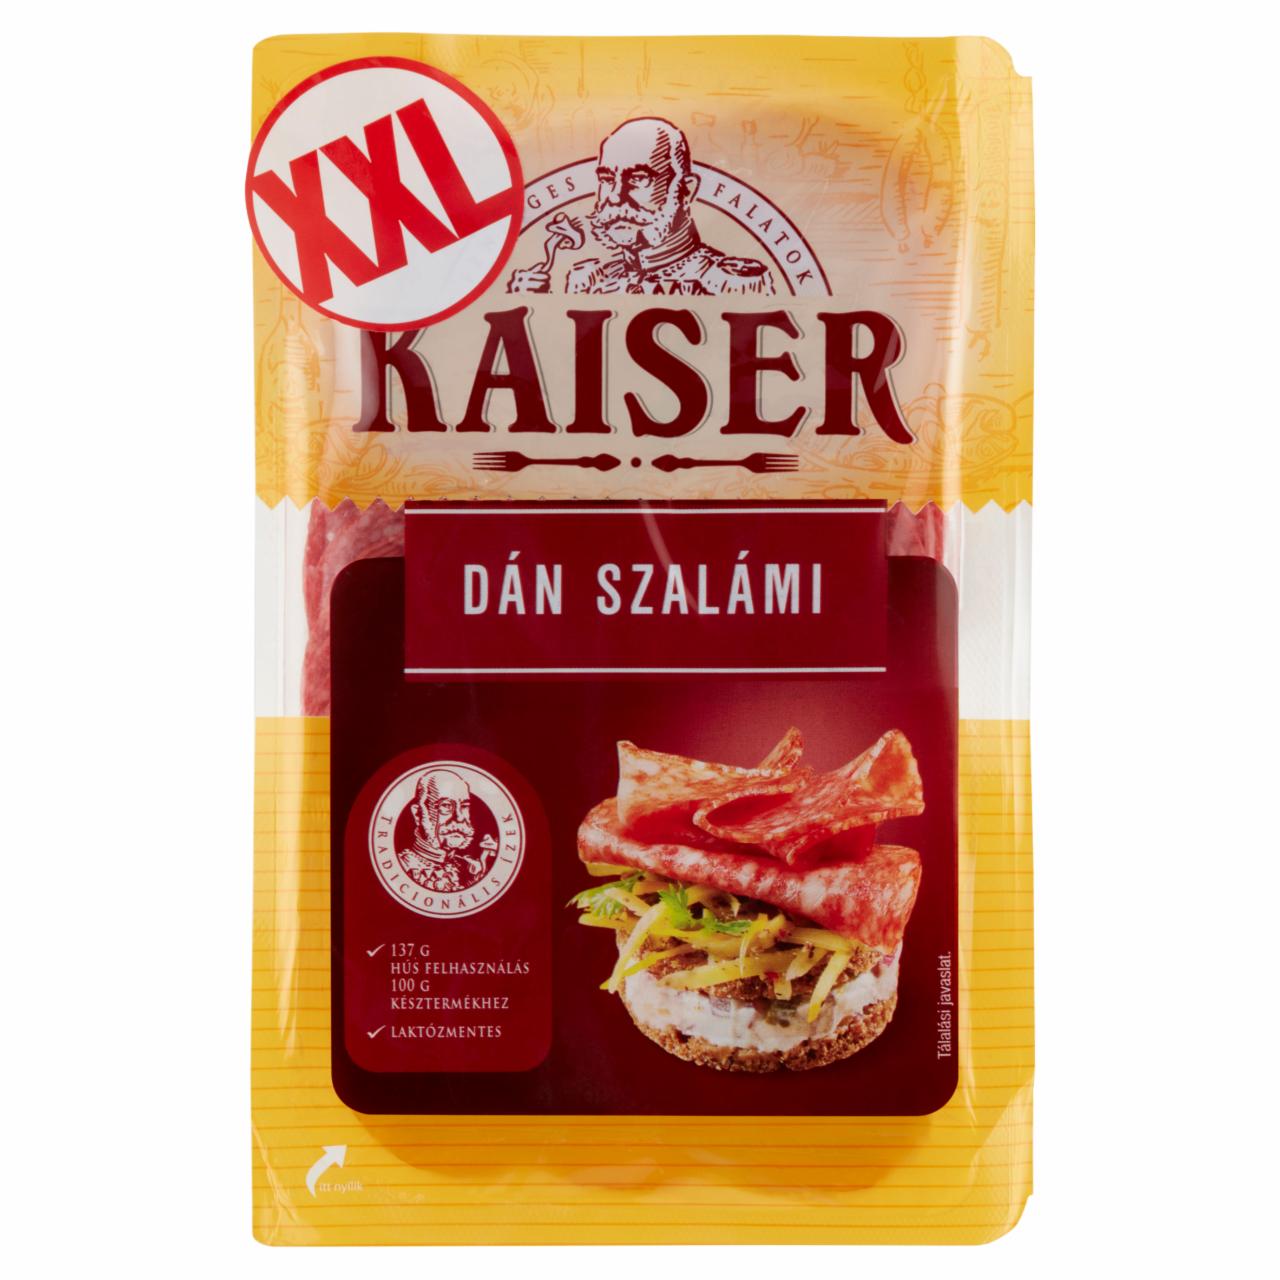 Képek - Kaiser szeletelt dán szalámi 200 g